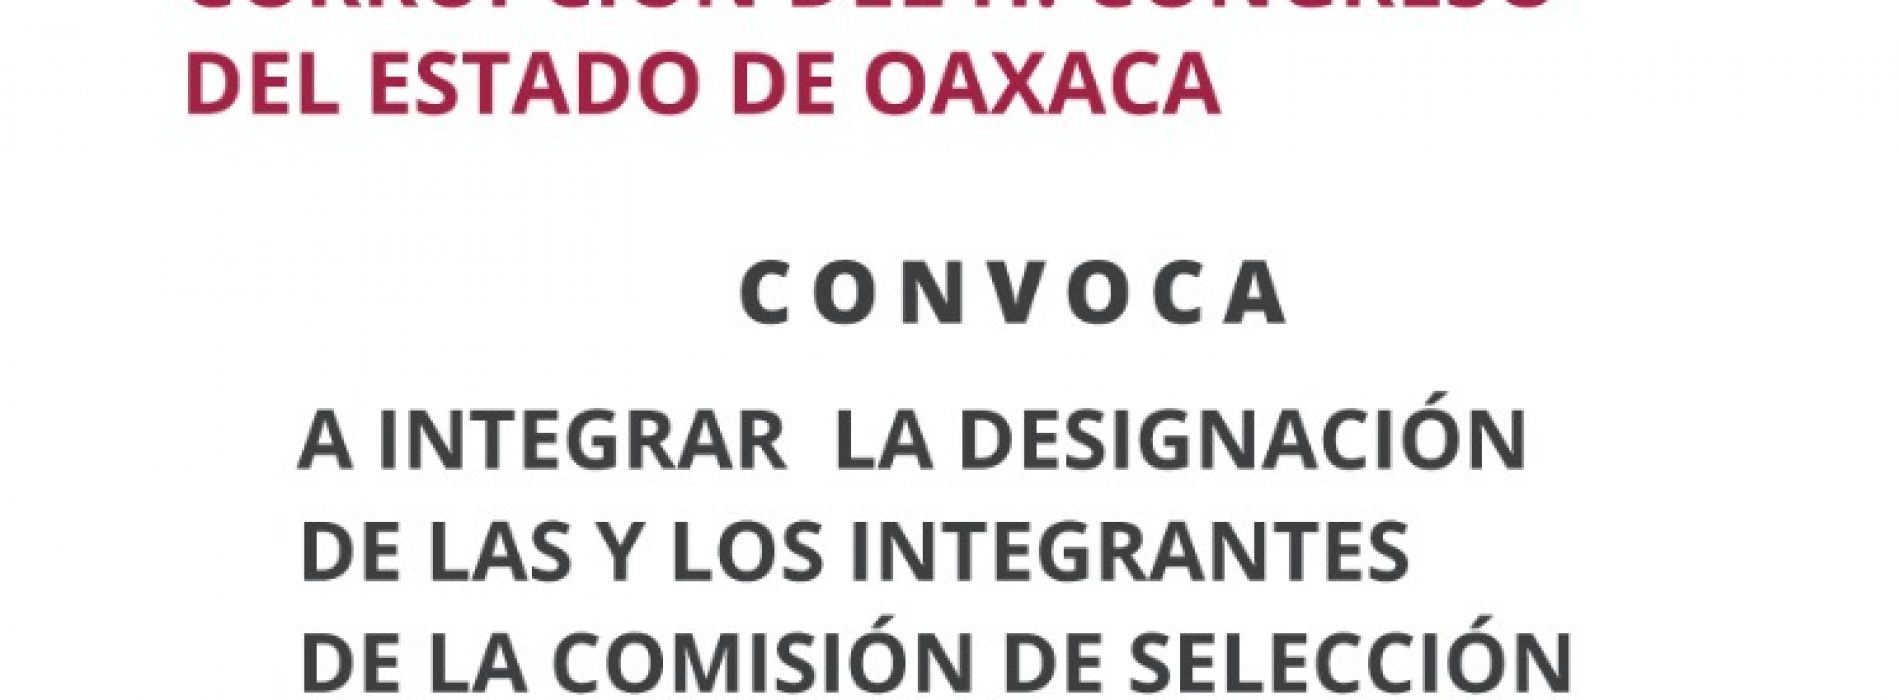 Avanza proceso de integración del Comité de Selección del sistema anticorrupción en Oaxaca